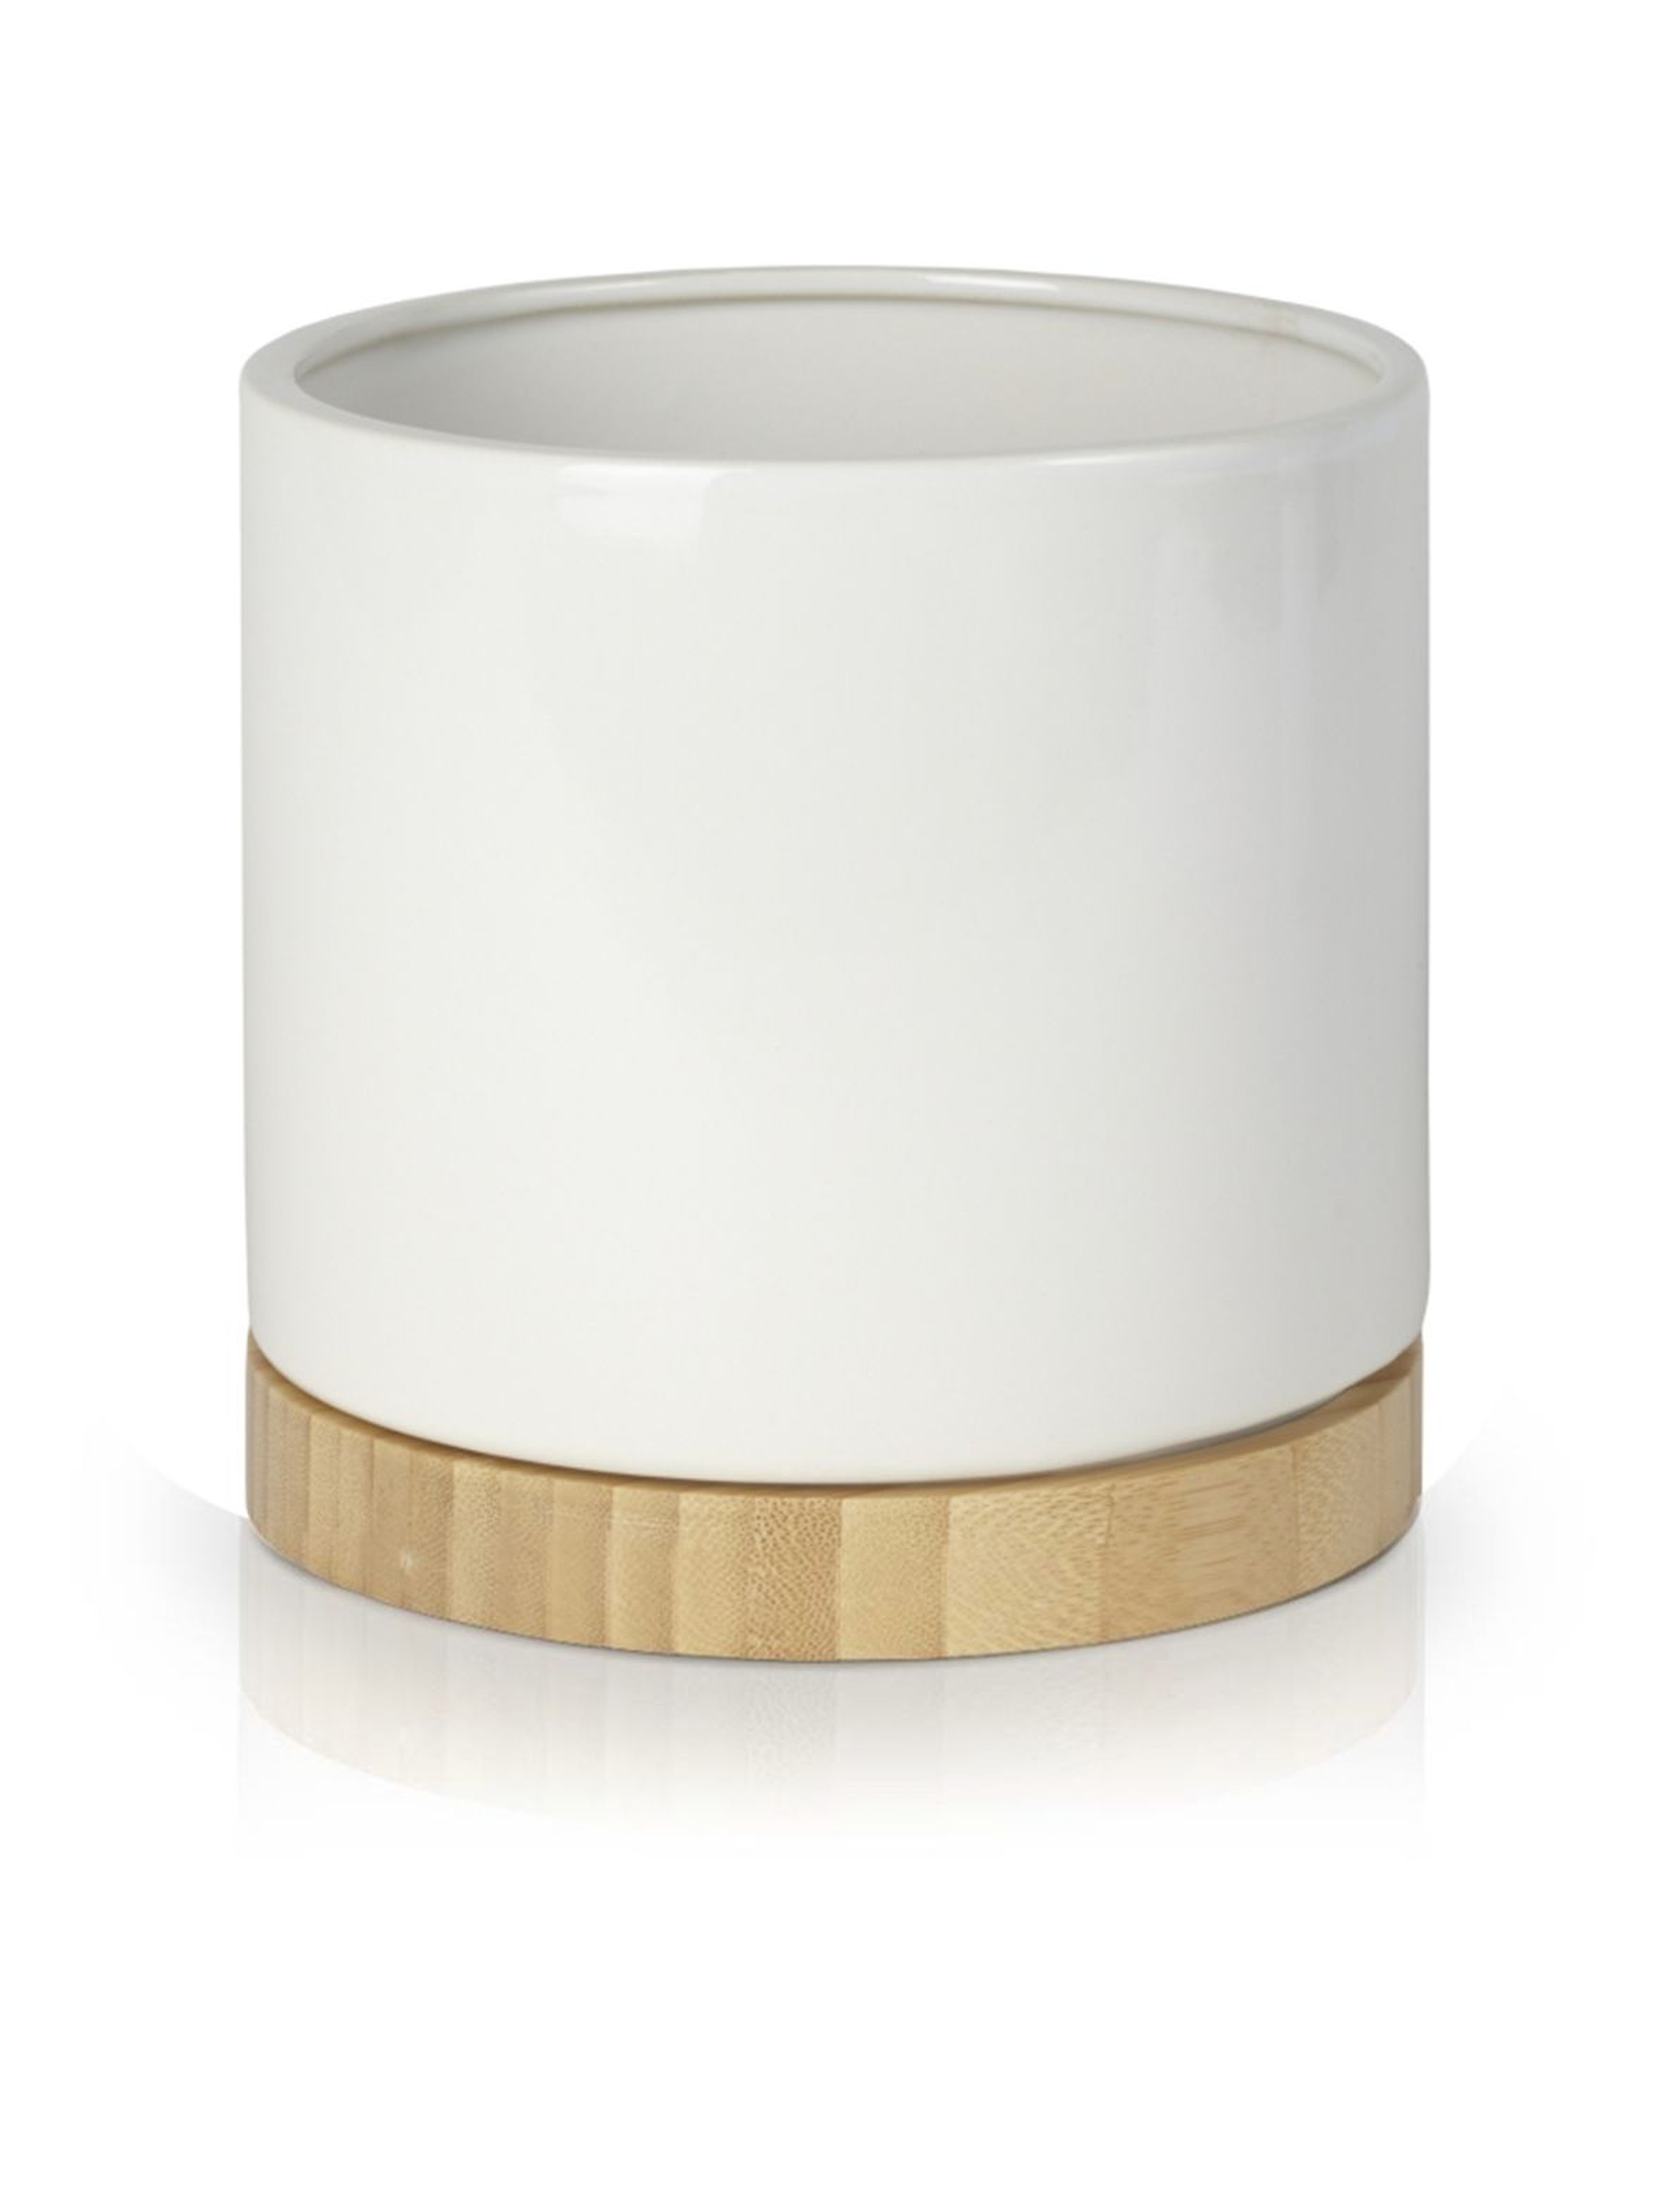 Donica ceramiczna w kształcie cylindra - biała